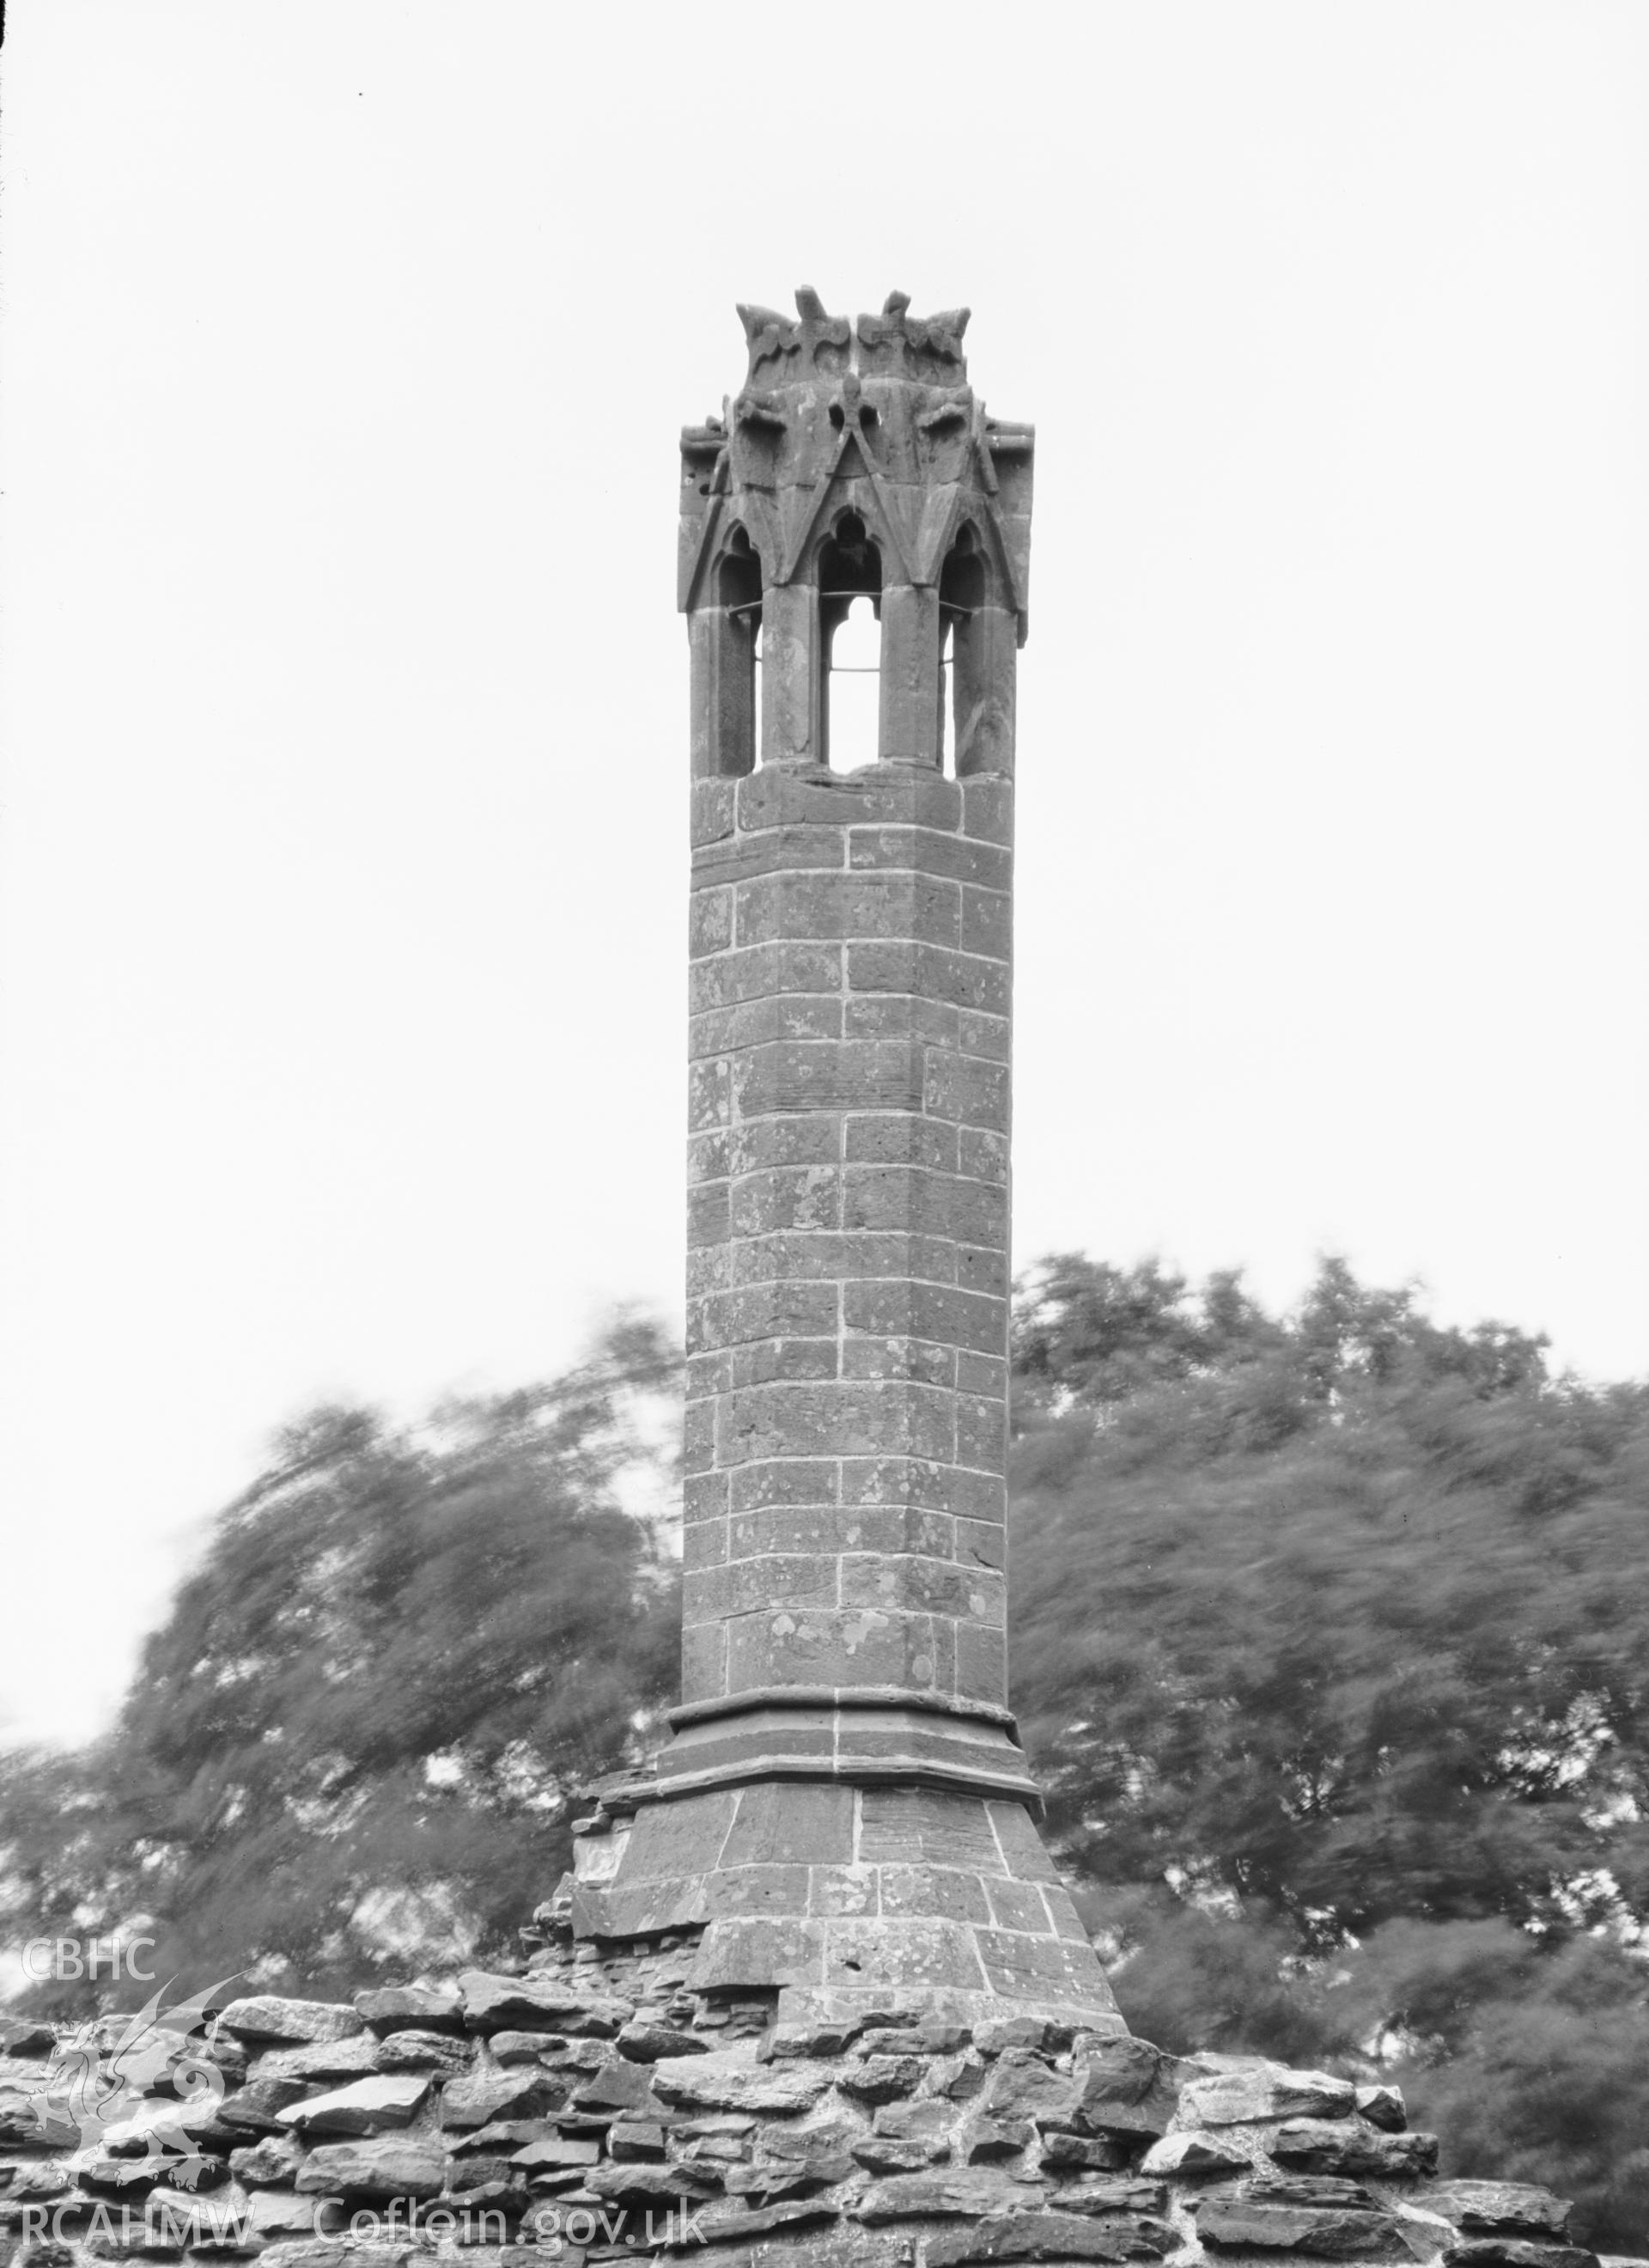 View of the chimney of Grosmont Castle, Upper Dyffryn taken by Clayton.